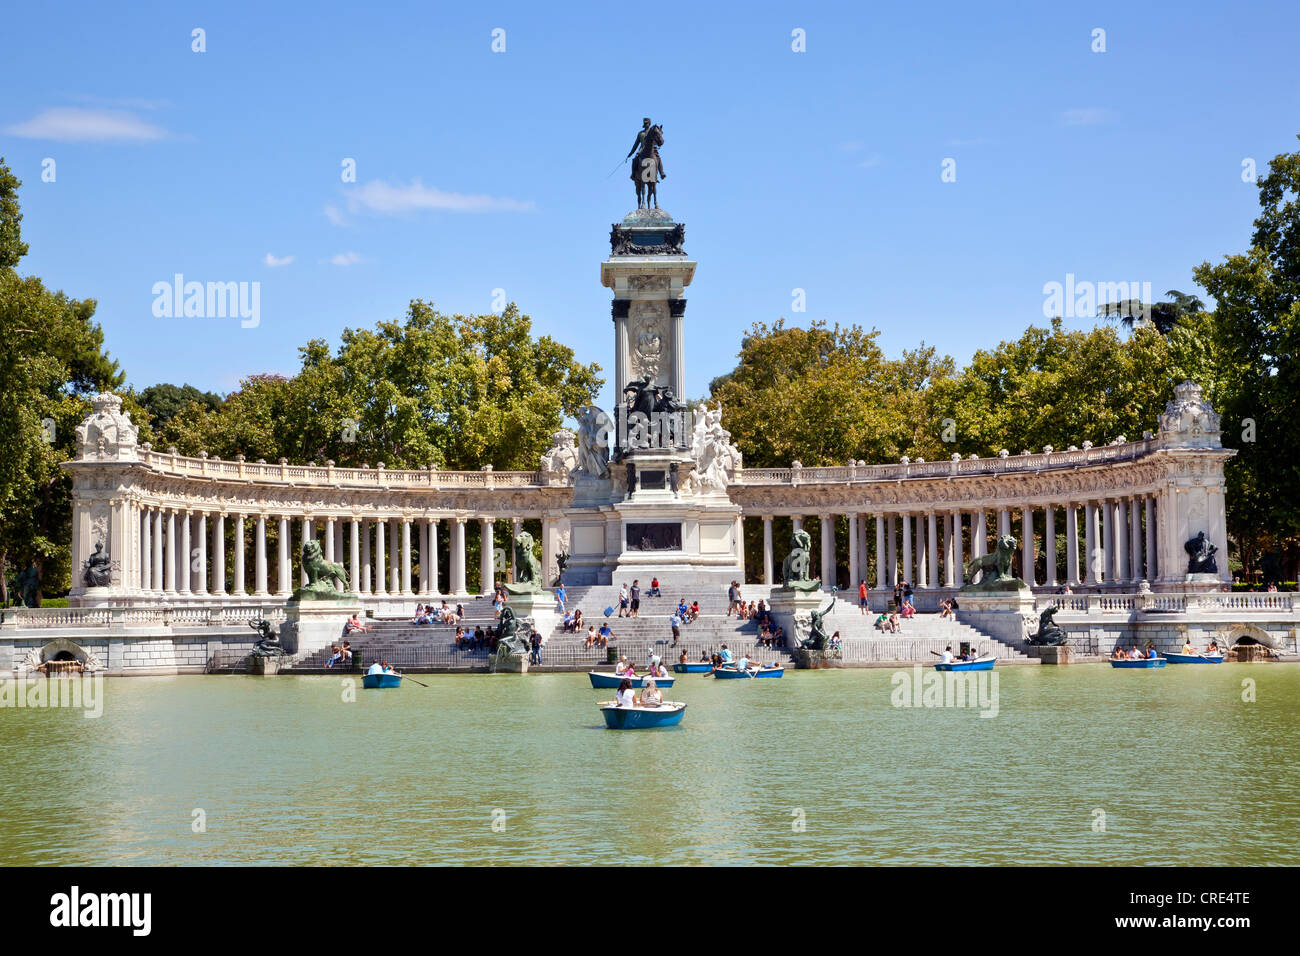 Imbarcazioni per escursioni sul lago di fronte al monumento ad Alfonso XII., nel Parque del Buen Retiro di Madrid in Spagna, Europa Foto Stock